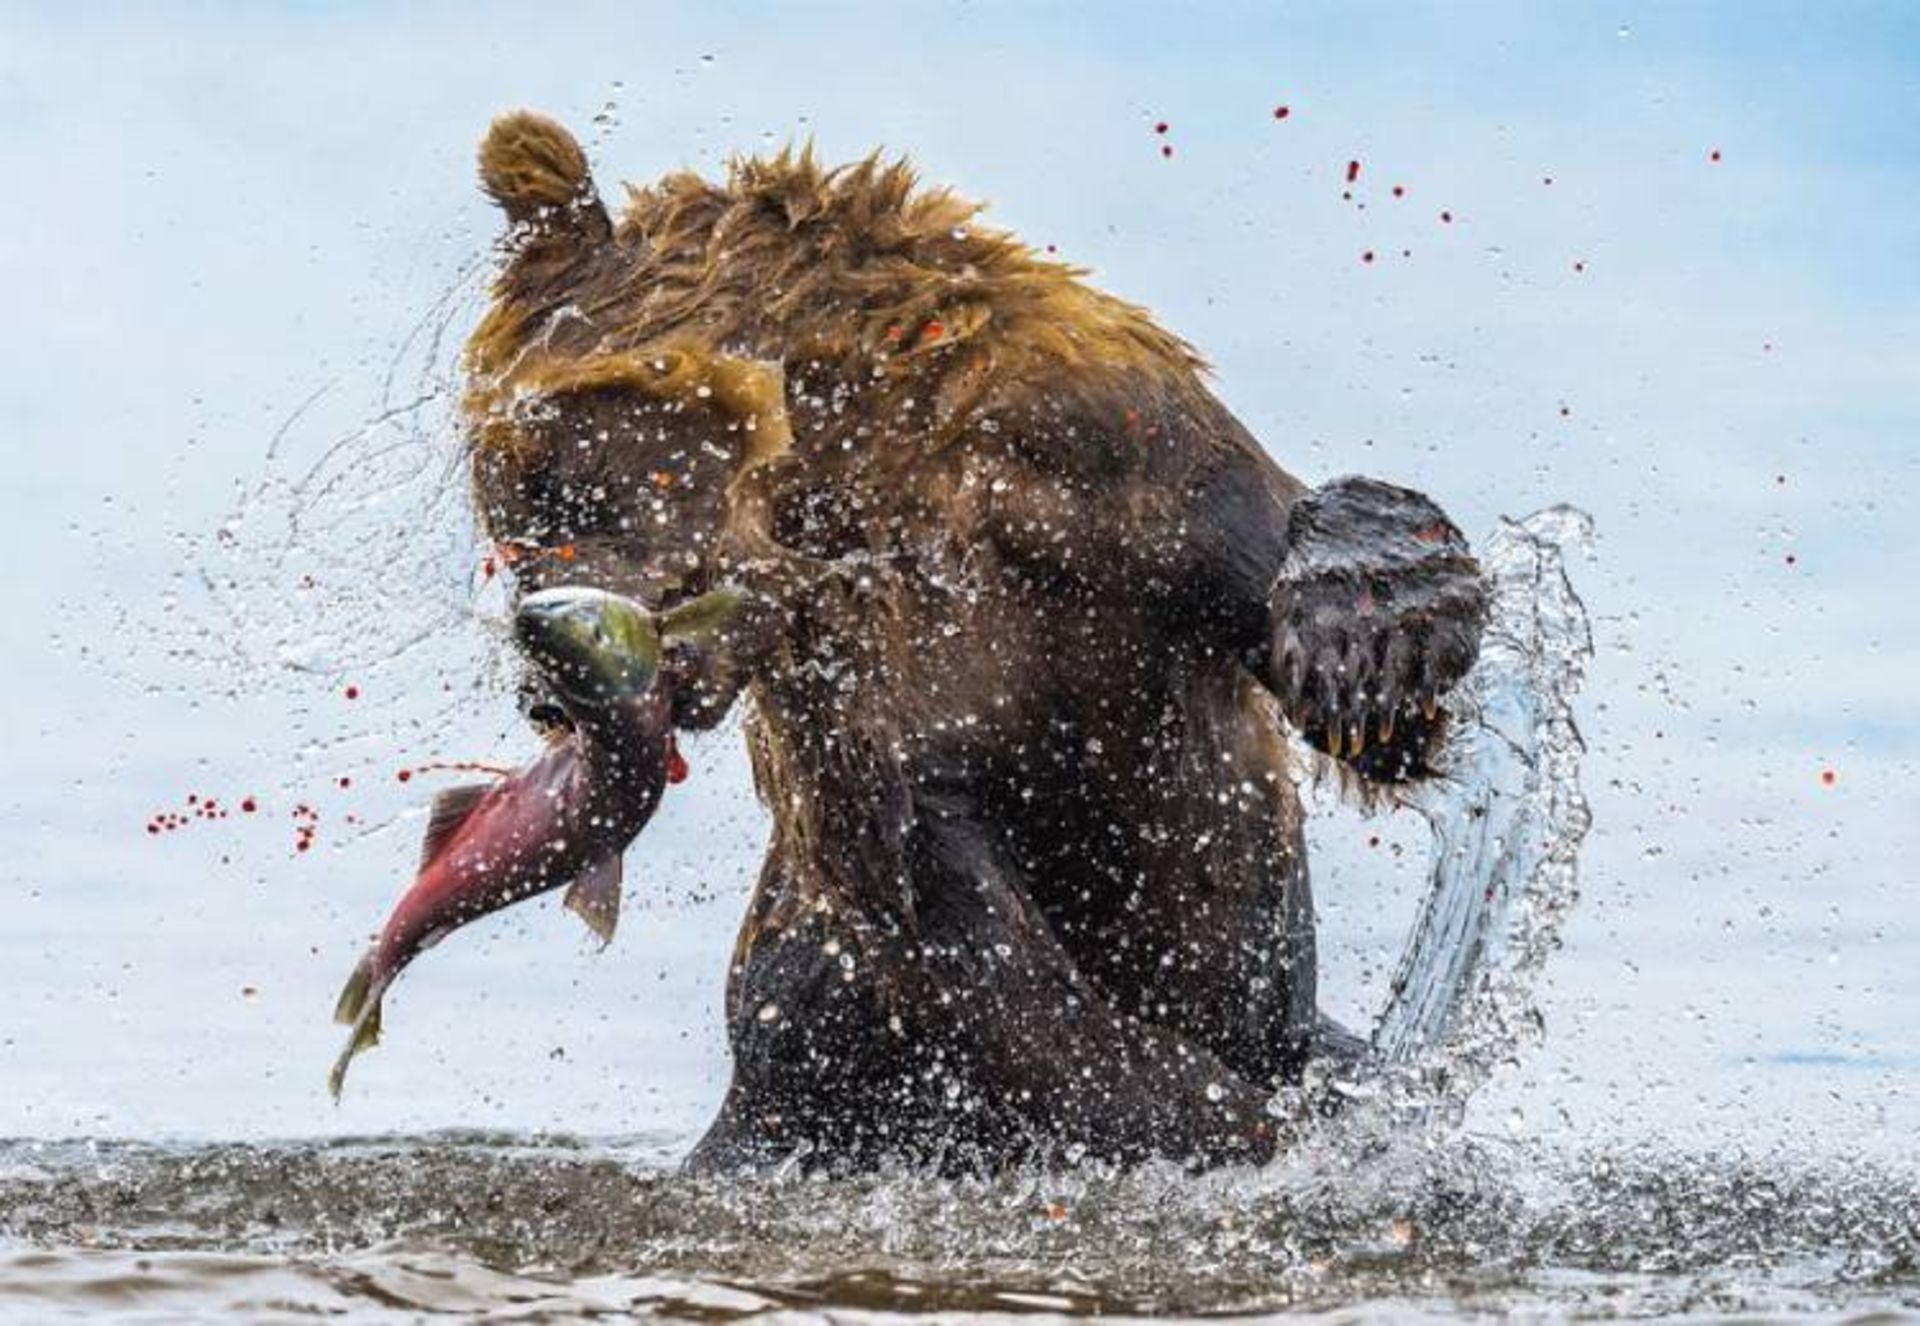 مرجع متخصصين ايران عكس فيناليست مسابقه bigpicture بخش «حيات وحش زميني»: «خرس بد»؛ عكاس: جان لانگلند